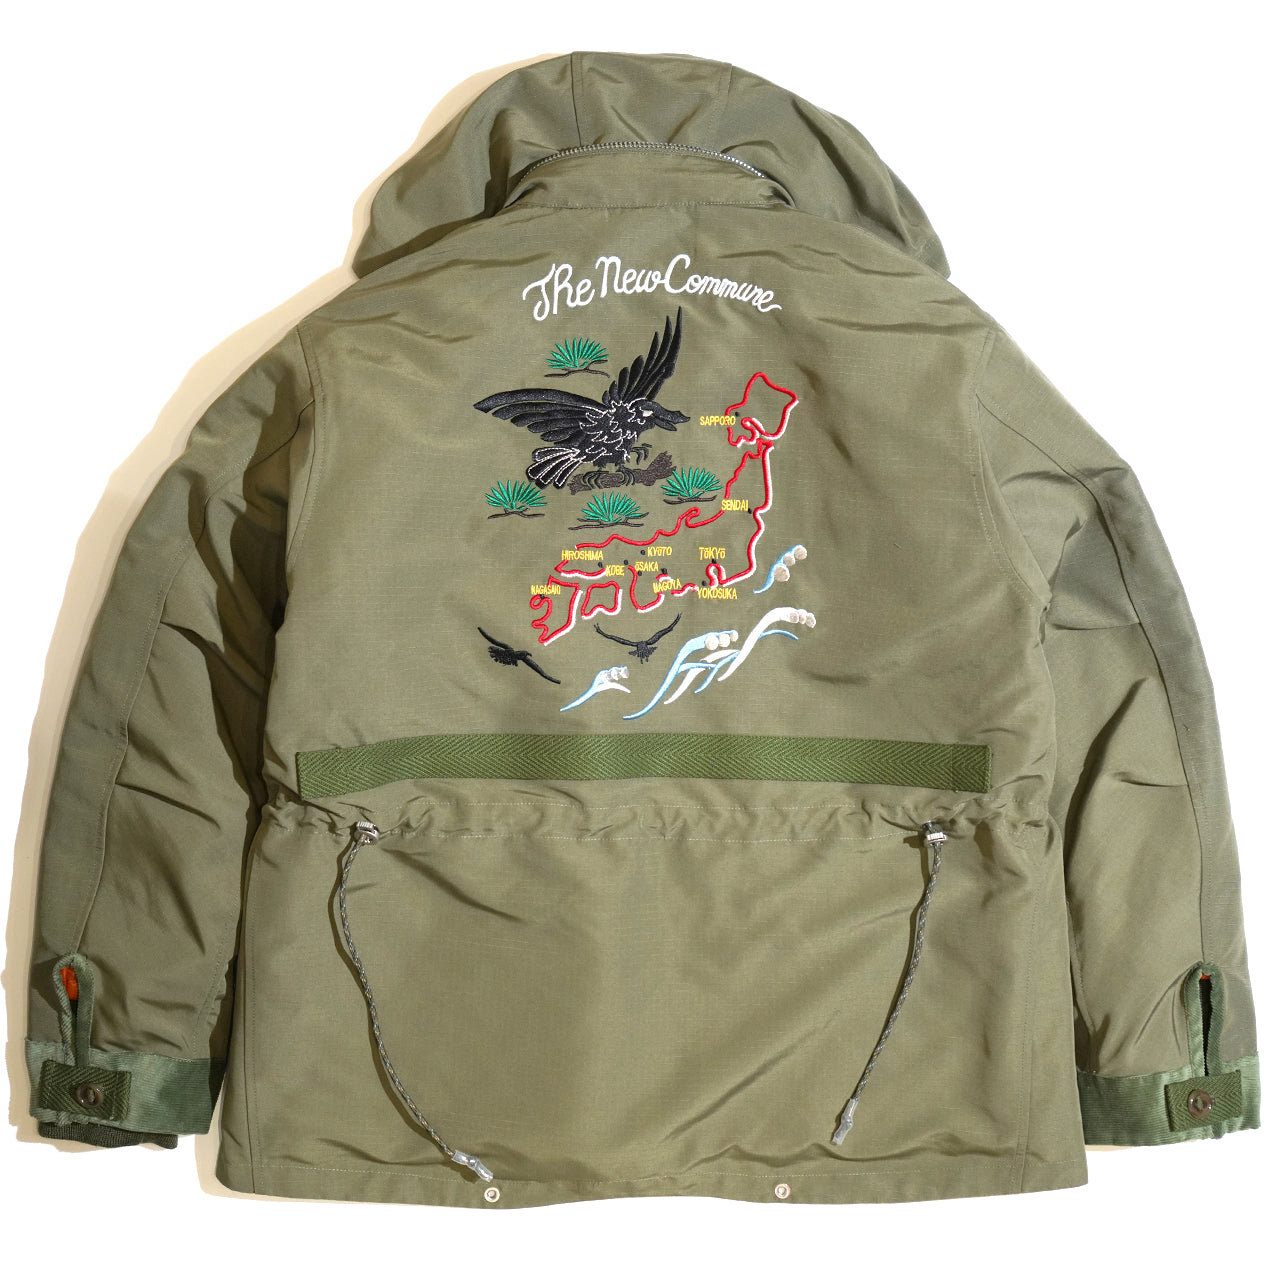 NEWCOMMUNE Souvenir military Jacket / Khaki